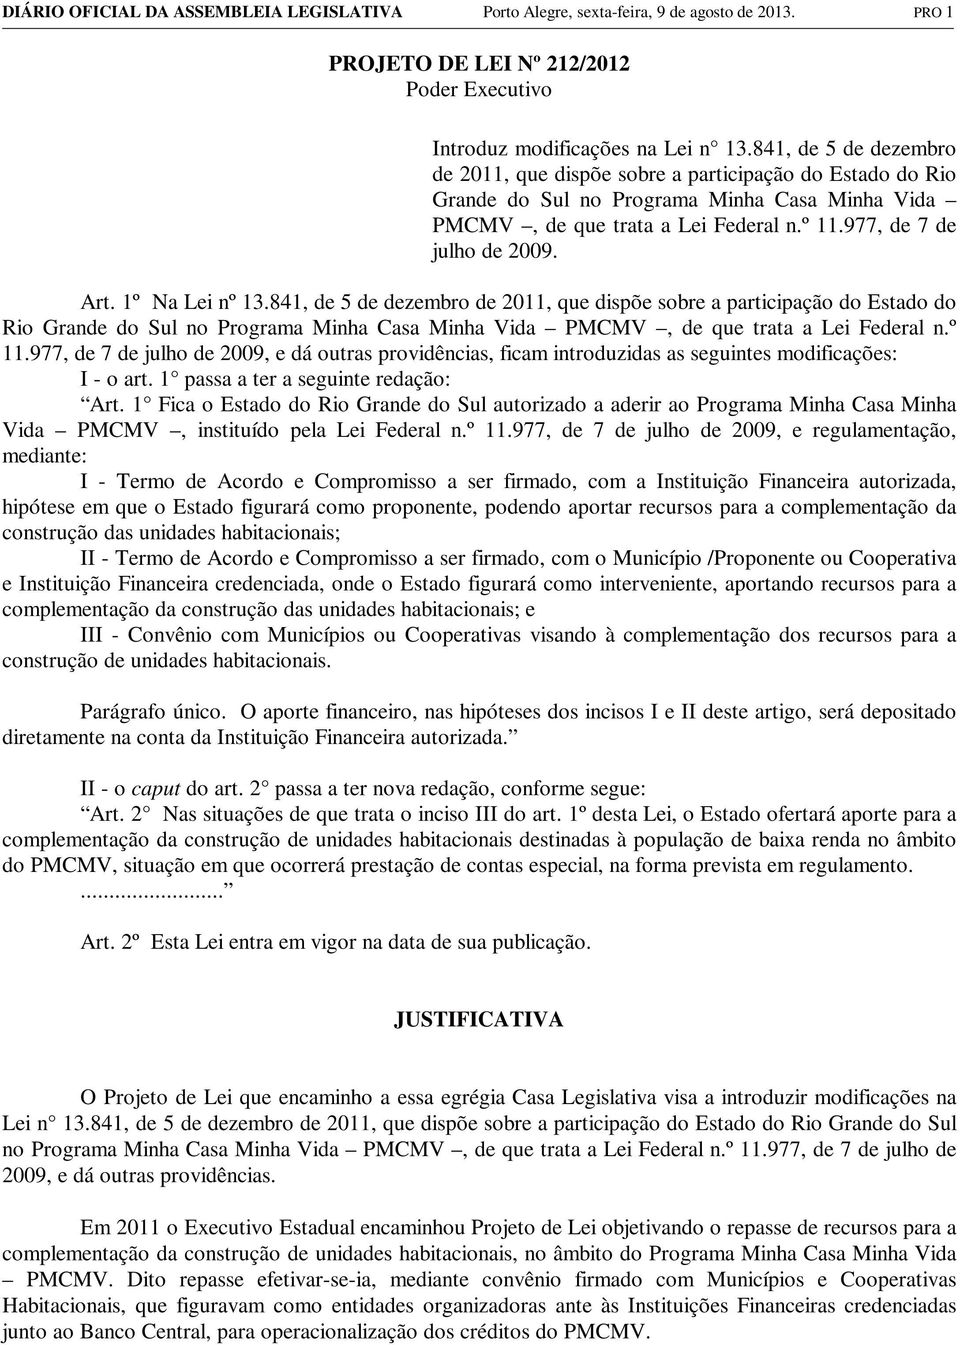 Art. 1º Na Lei nº 13.841, de 5 de dezembro de 2011, que dispõe sobre a participação do Estado do Rio Grande do Sul no Programa Minha Casa Minha Vida PMCMV, de que trata a Lei Federal n.º 11.